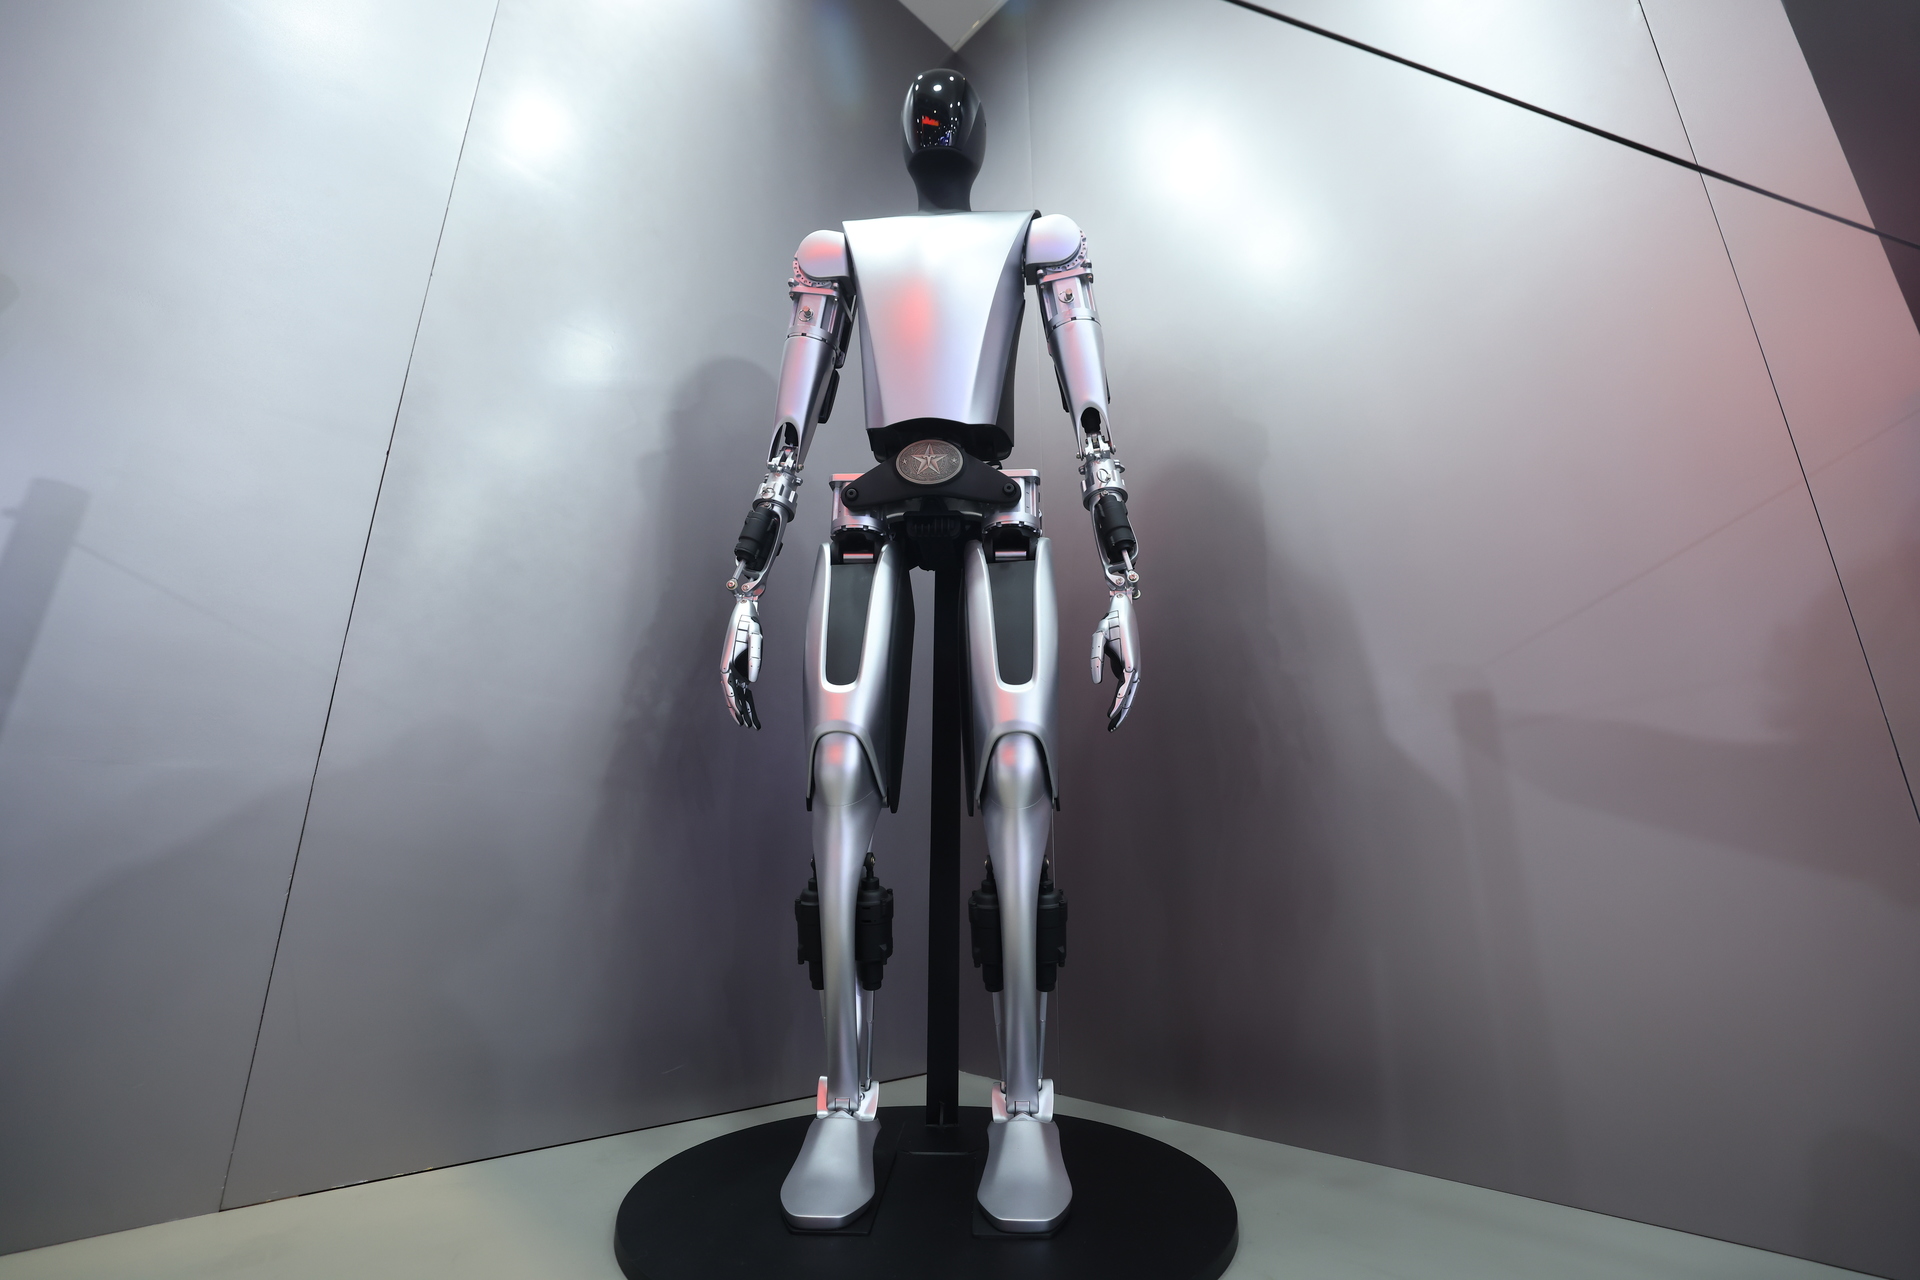 优必选人形机器人接入大模型 明年或小批量交付新能源汽车工厂